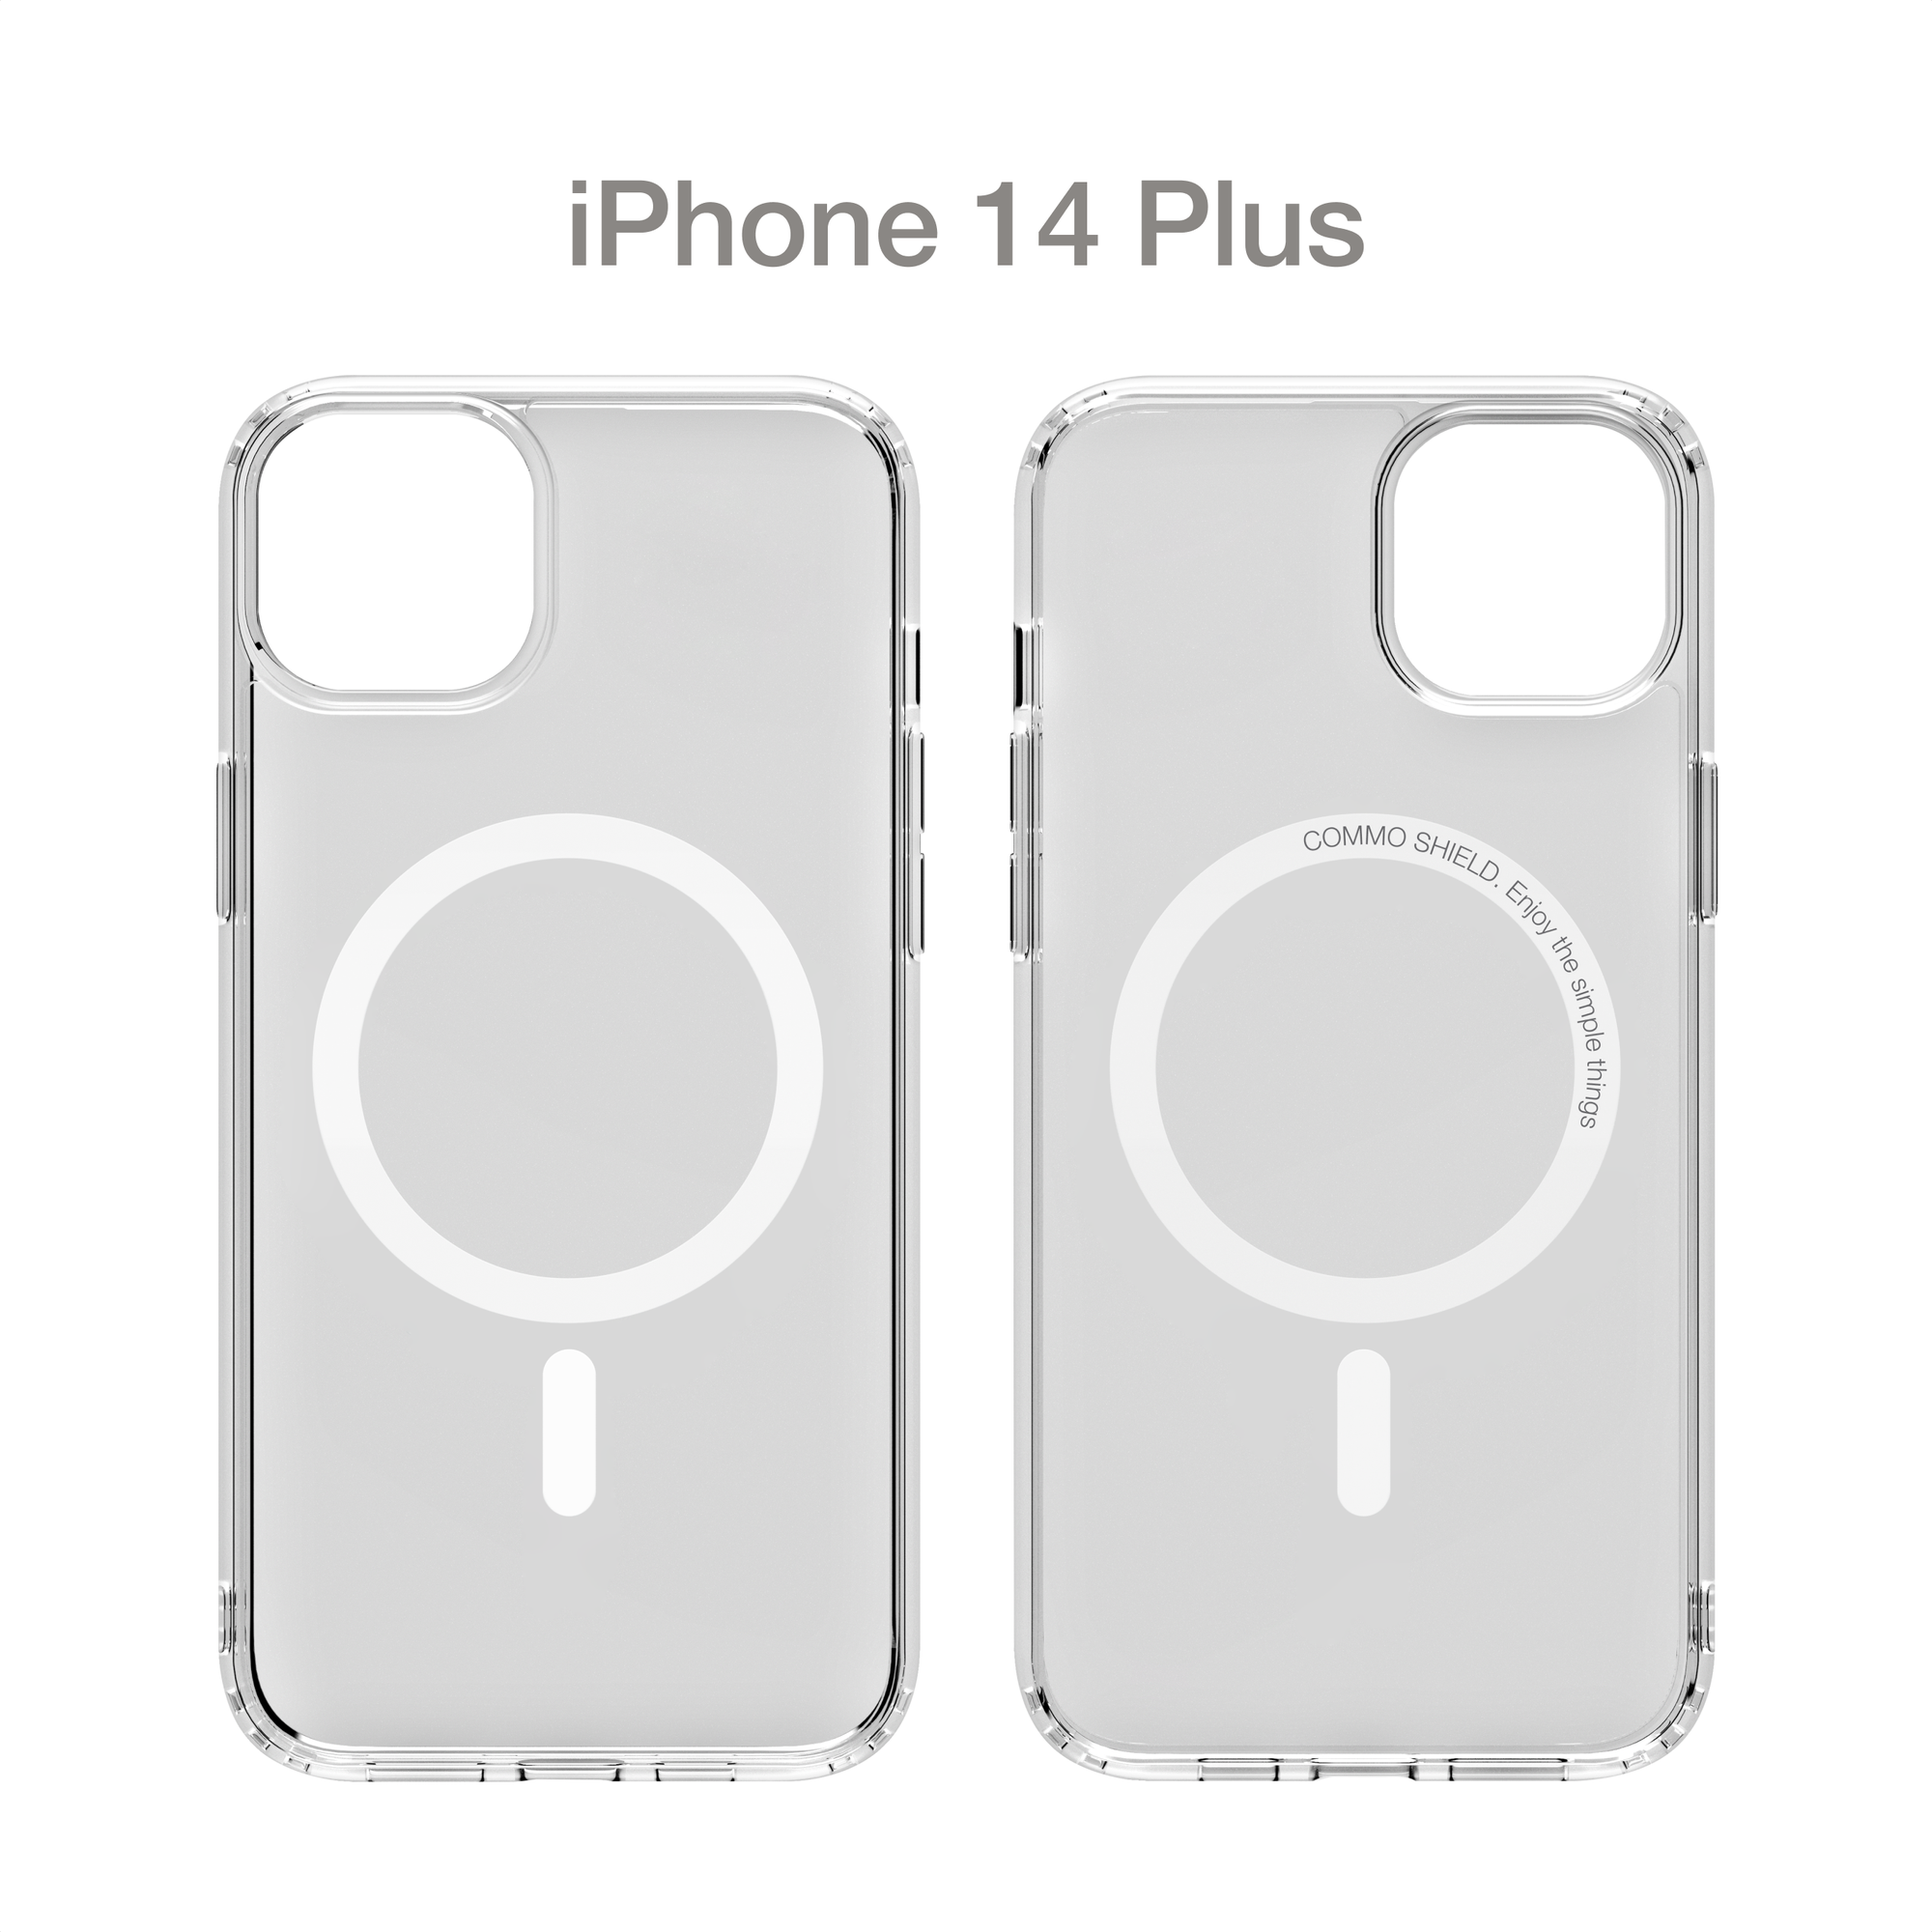 Прозрачный чехол COMMO Shield Case для iPhone 14 Plus с поддержкой беспроводной зарядки